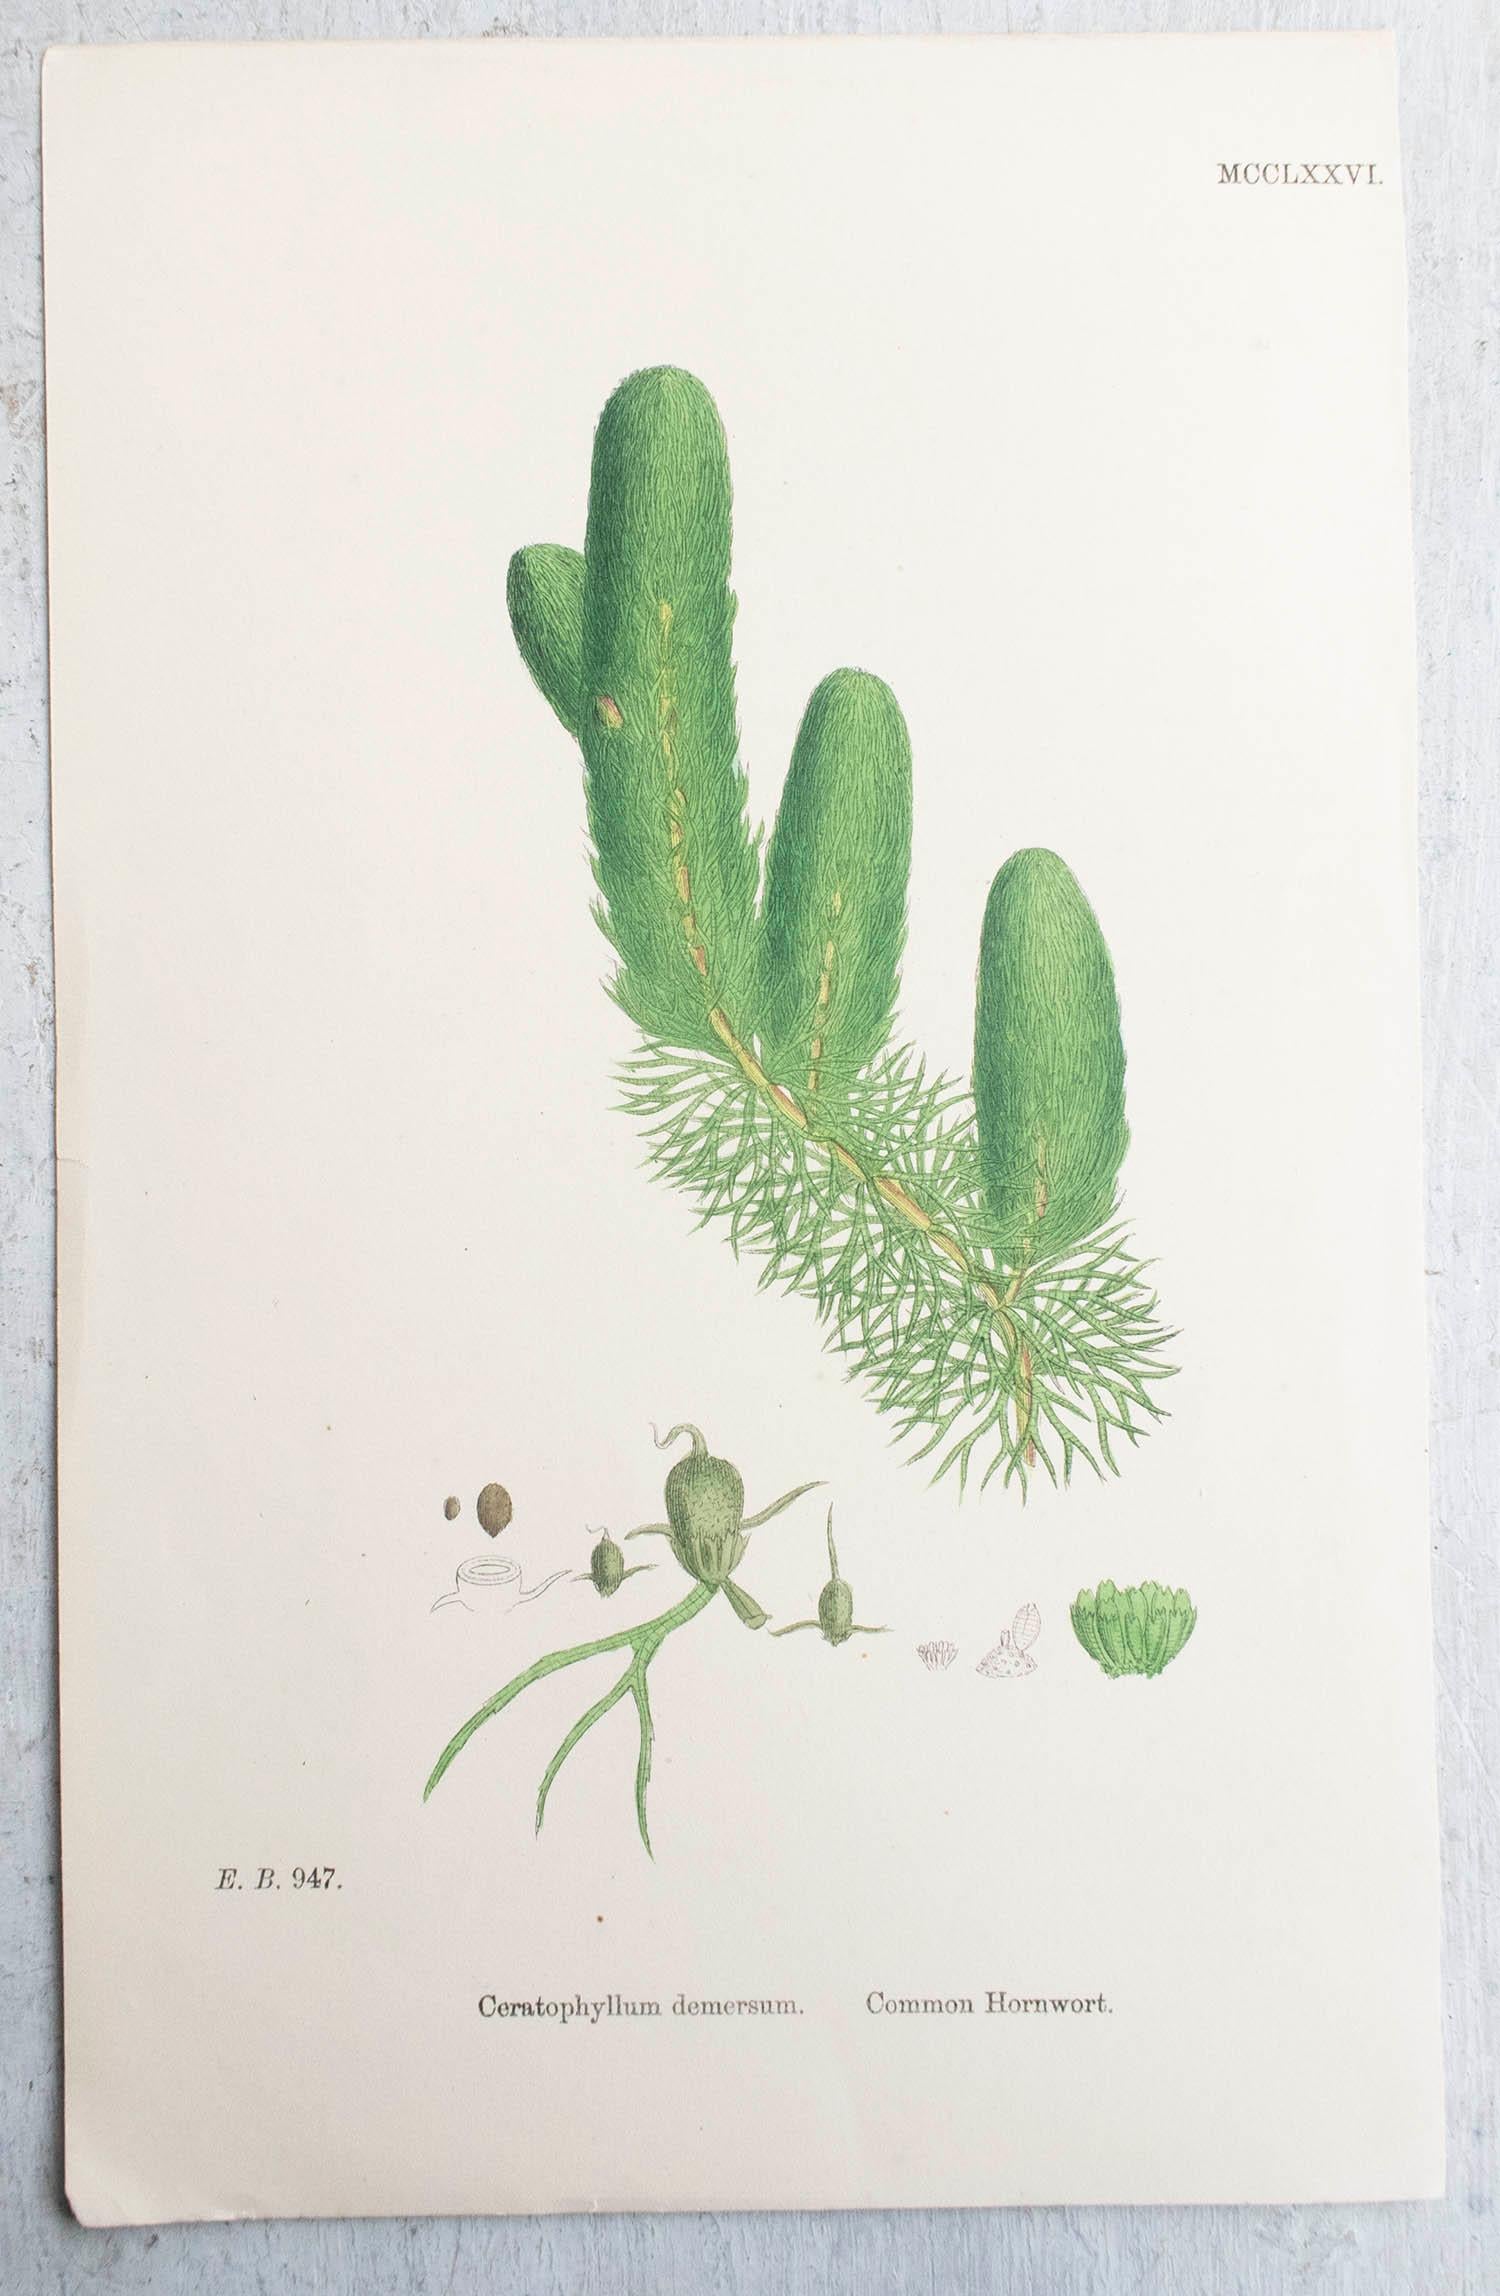 Wunderschöner Satz von 6 botanischen Drucken

Lithographien nach den botanischen Originalzeichnungen von Hooker.

Original Farbe

Veröffentlicht, um 1850

Ungerahmt.

Die angegebenen Maße beziehen sich auf einen Druck.

